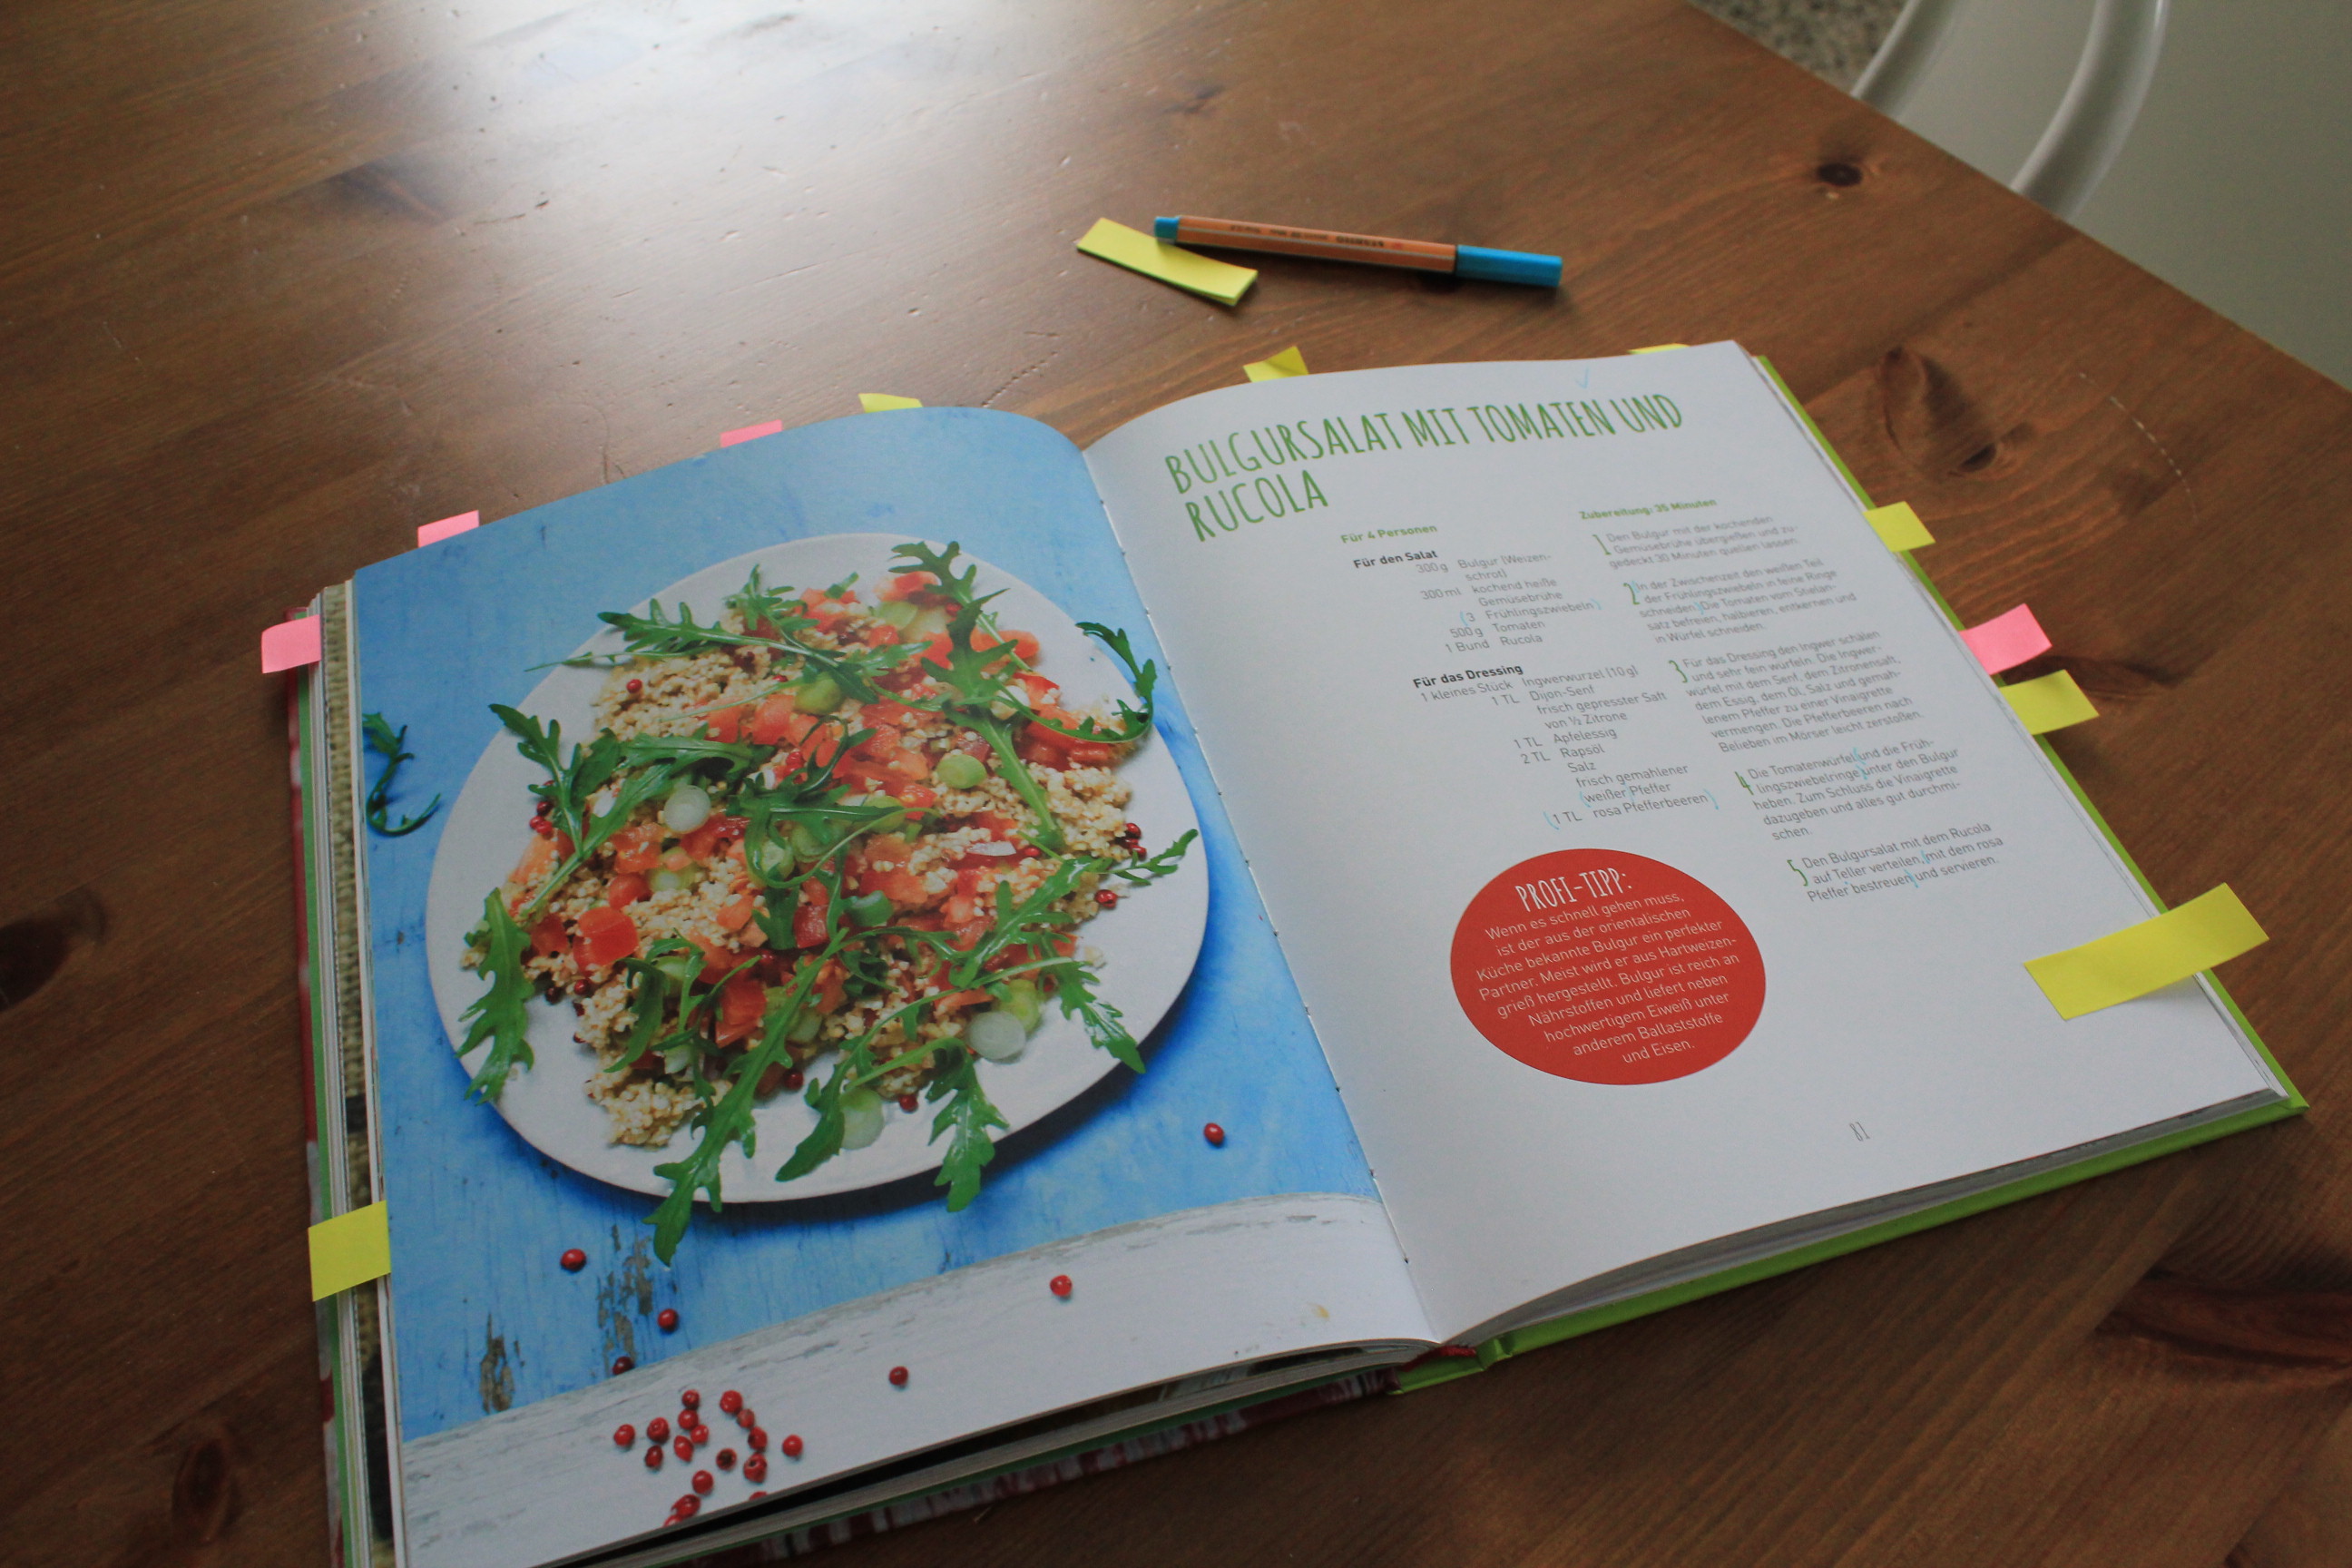 Das bisher schönste Kochbuch in meiner Sammlung: “Vegan tut gut – schmeckt gut!”